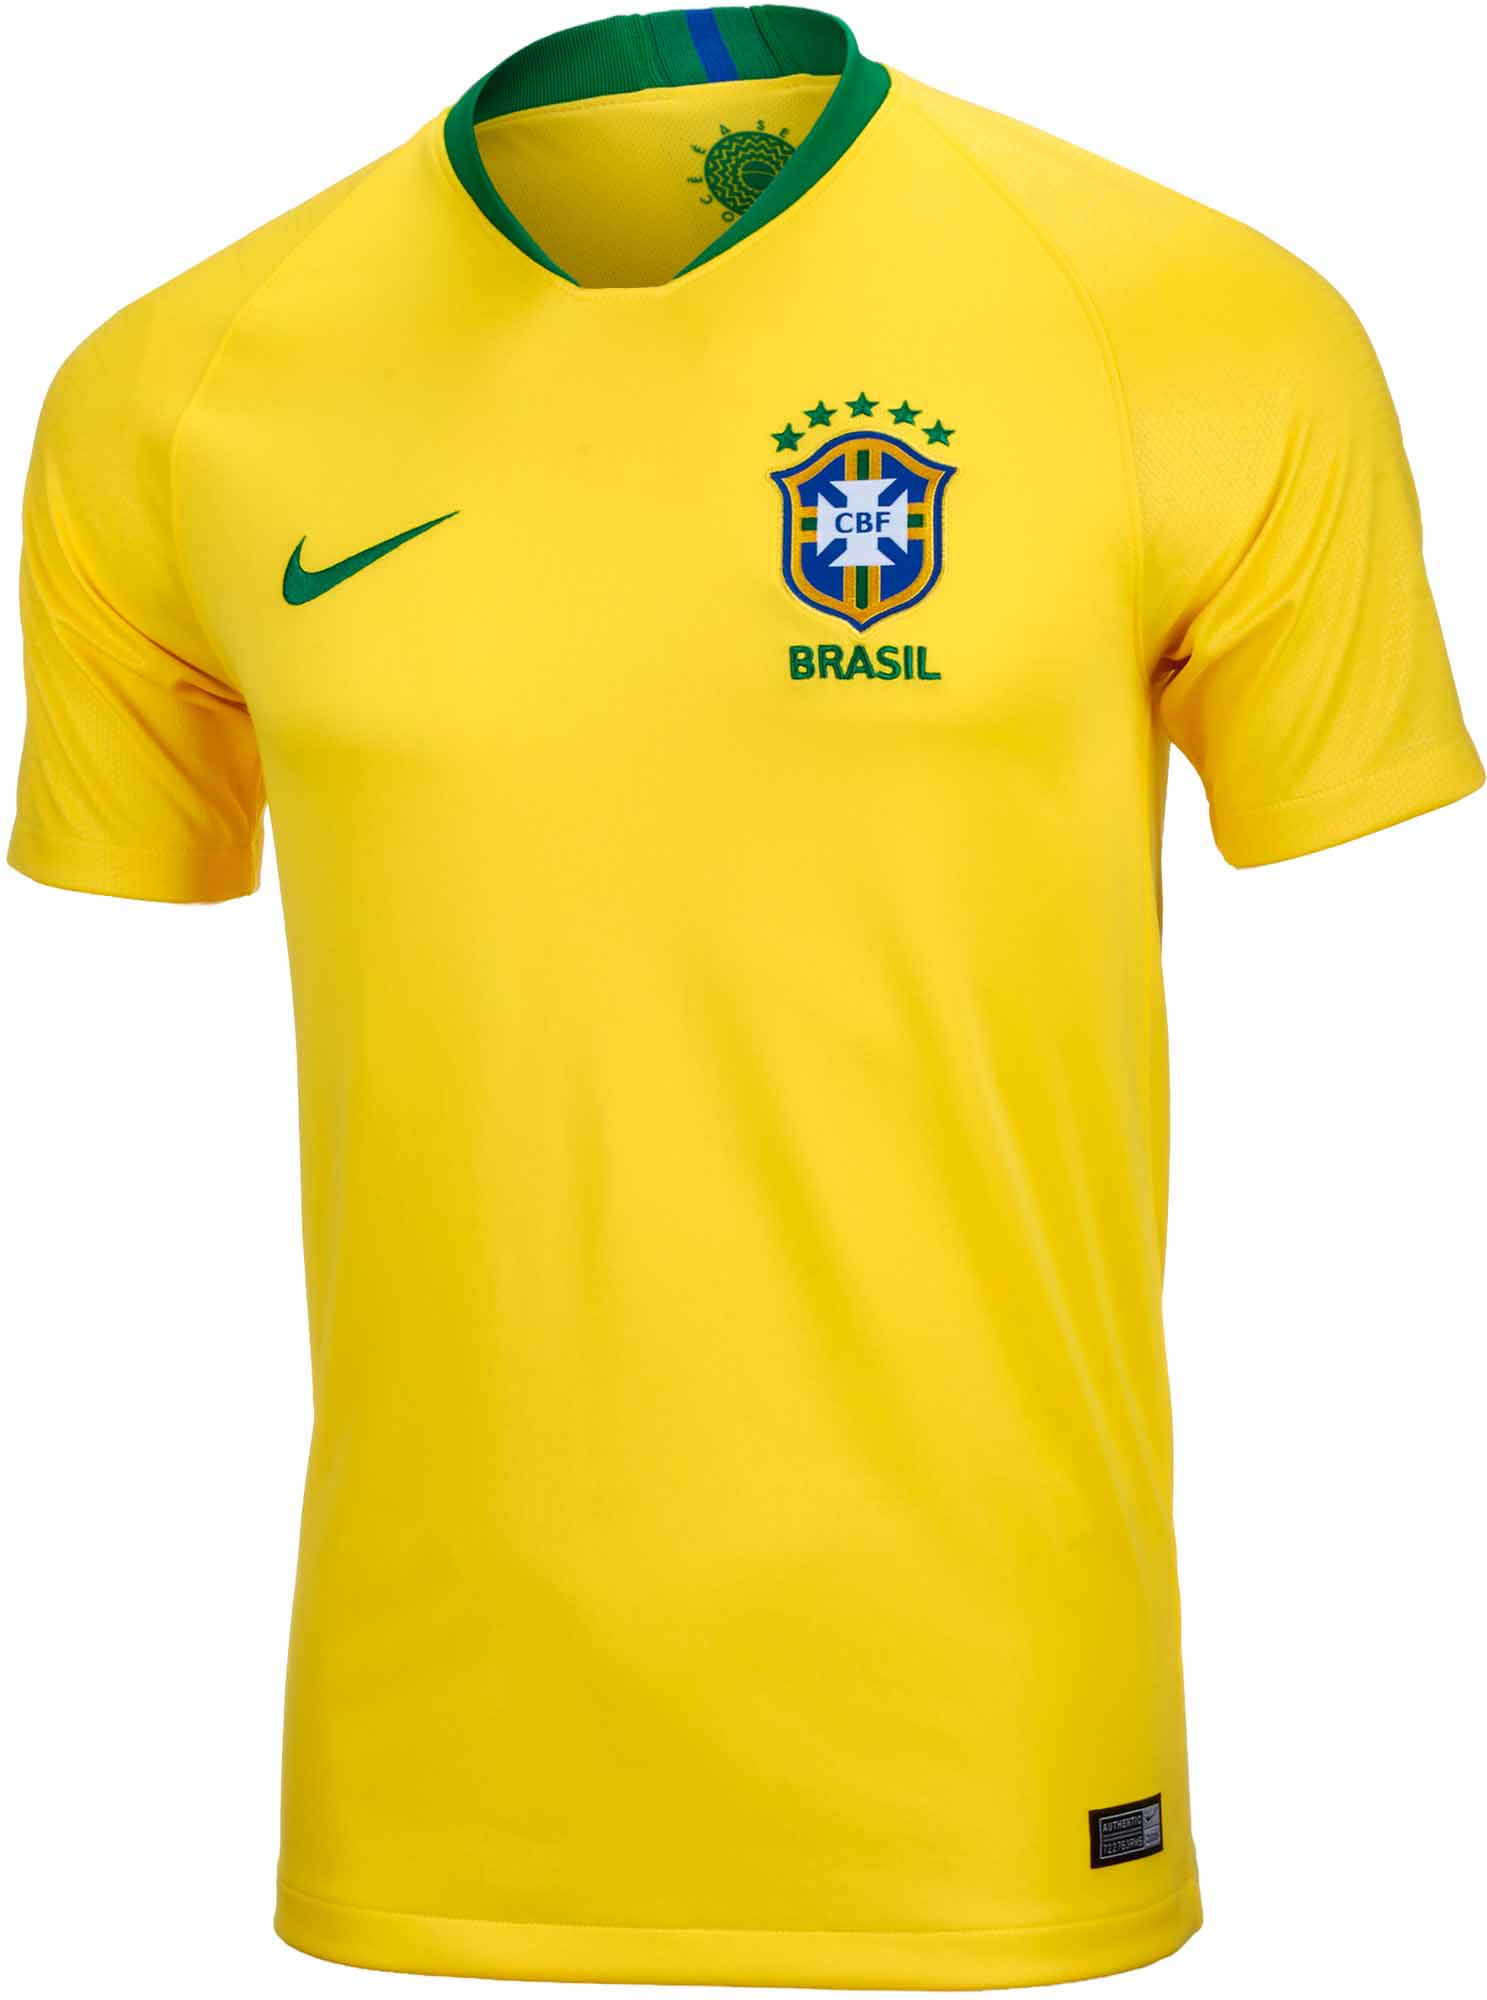 Brazil Jersey 2018 World Cup Jersey Terlengkap